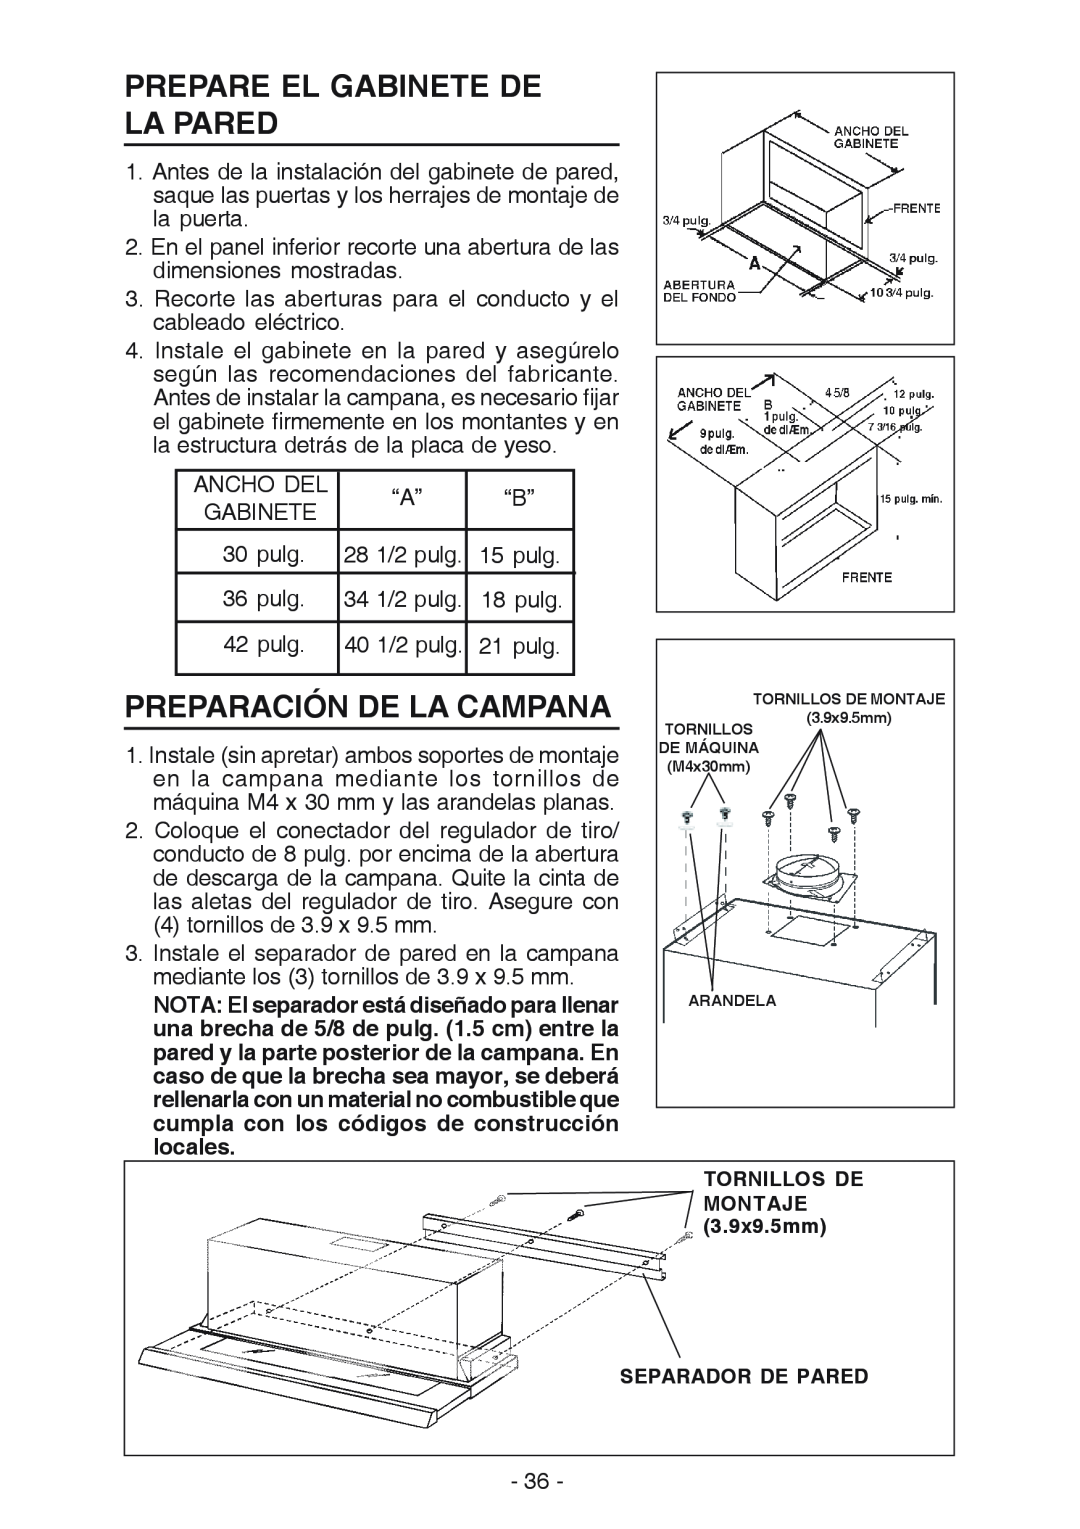 Best U102E Prepare El Gabinete De La Pared, Preparación De La Campana, TORNILLOS DE MONTAJE 3.9x9.5mm SEPARADOR DE PARED 